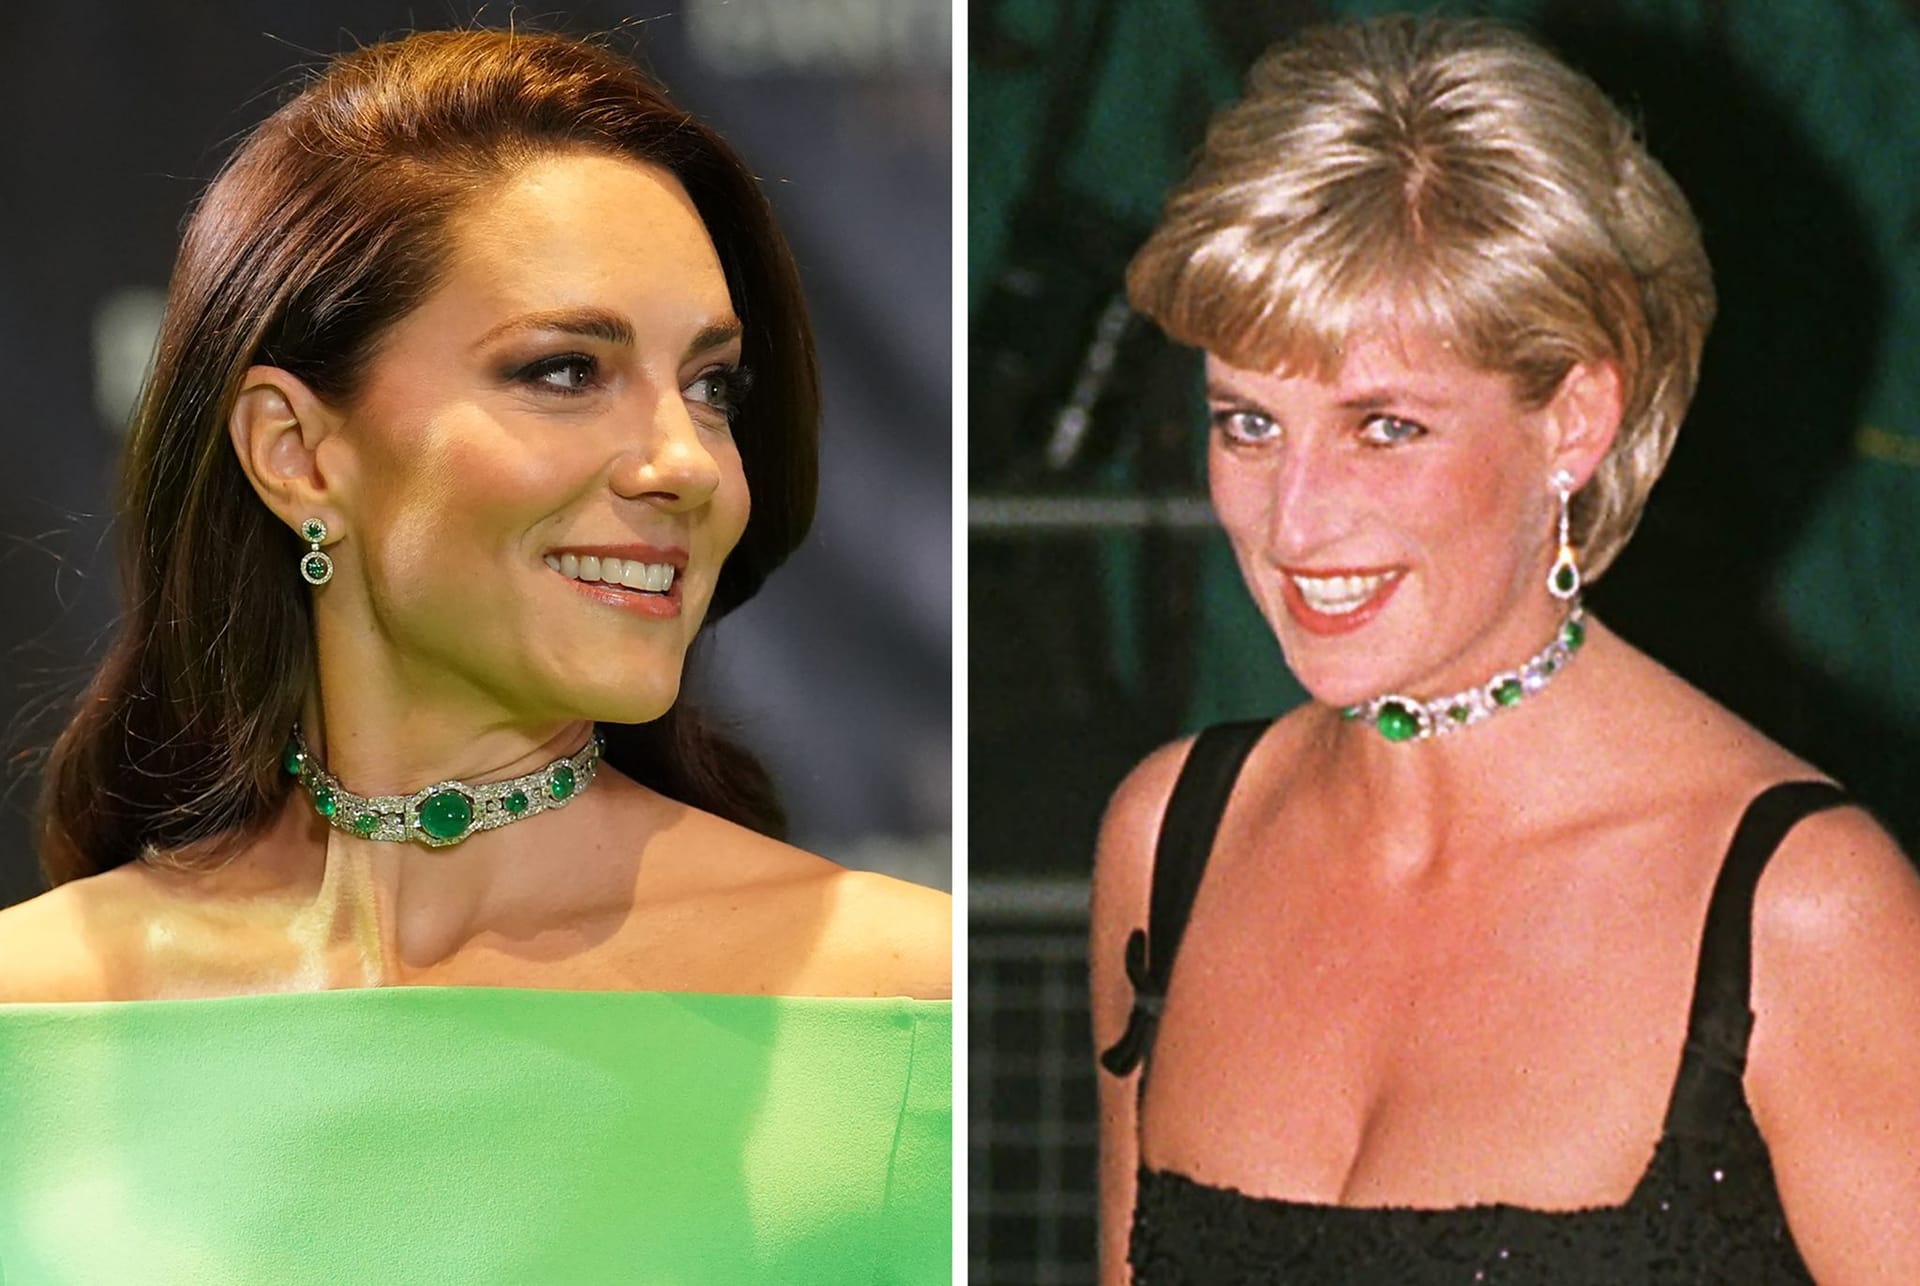 USA, Boston: Kate, Prinzessin von Wales, trägt am 02.12.2022 bei der Verleihung des Umweltpreises "Earthshot" den Halsschmuck den Diana, Prinzessin von Wales, am 01.07.1997 zu einer Veranstaltung in der Tate Gallery trug.